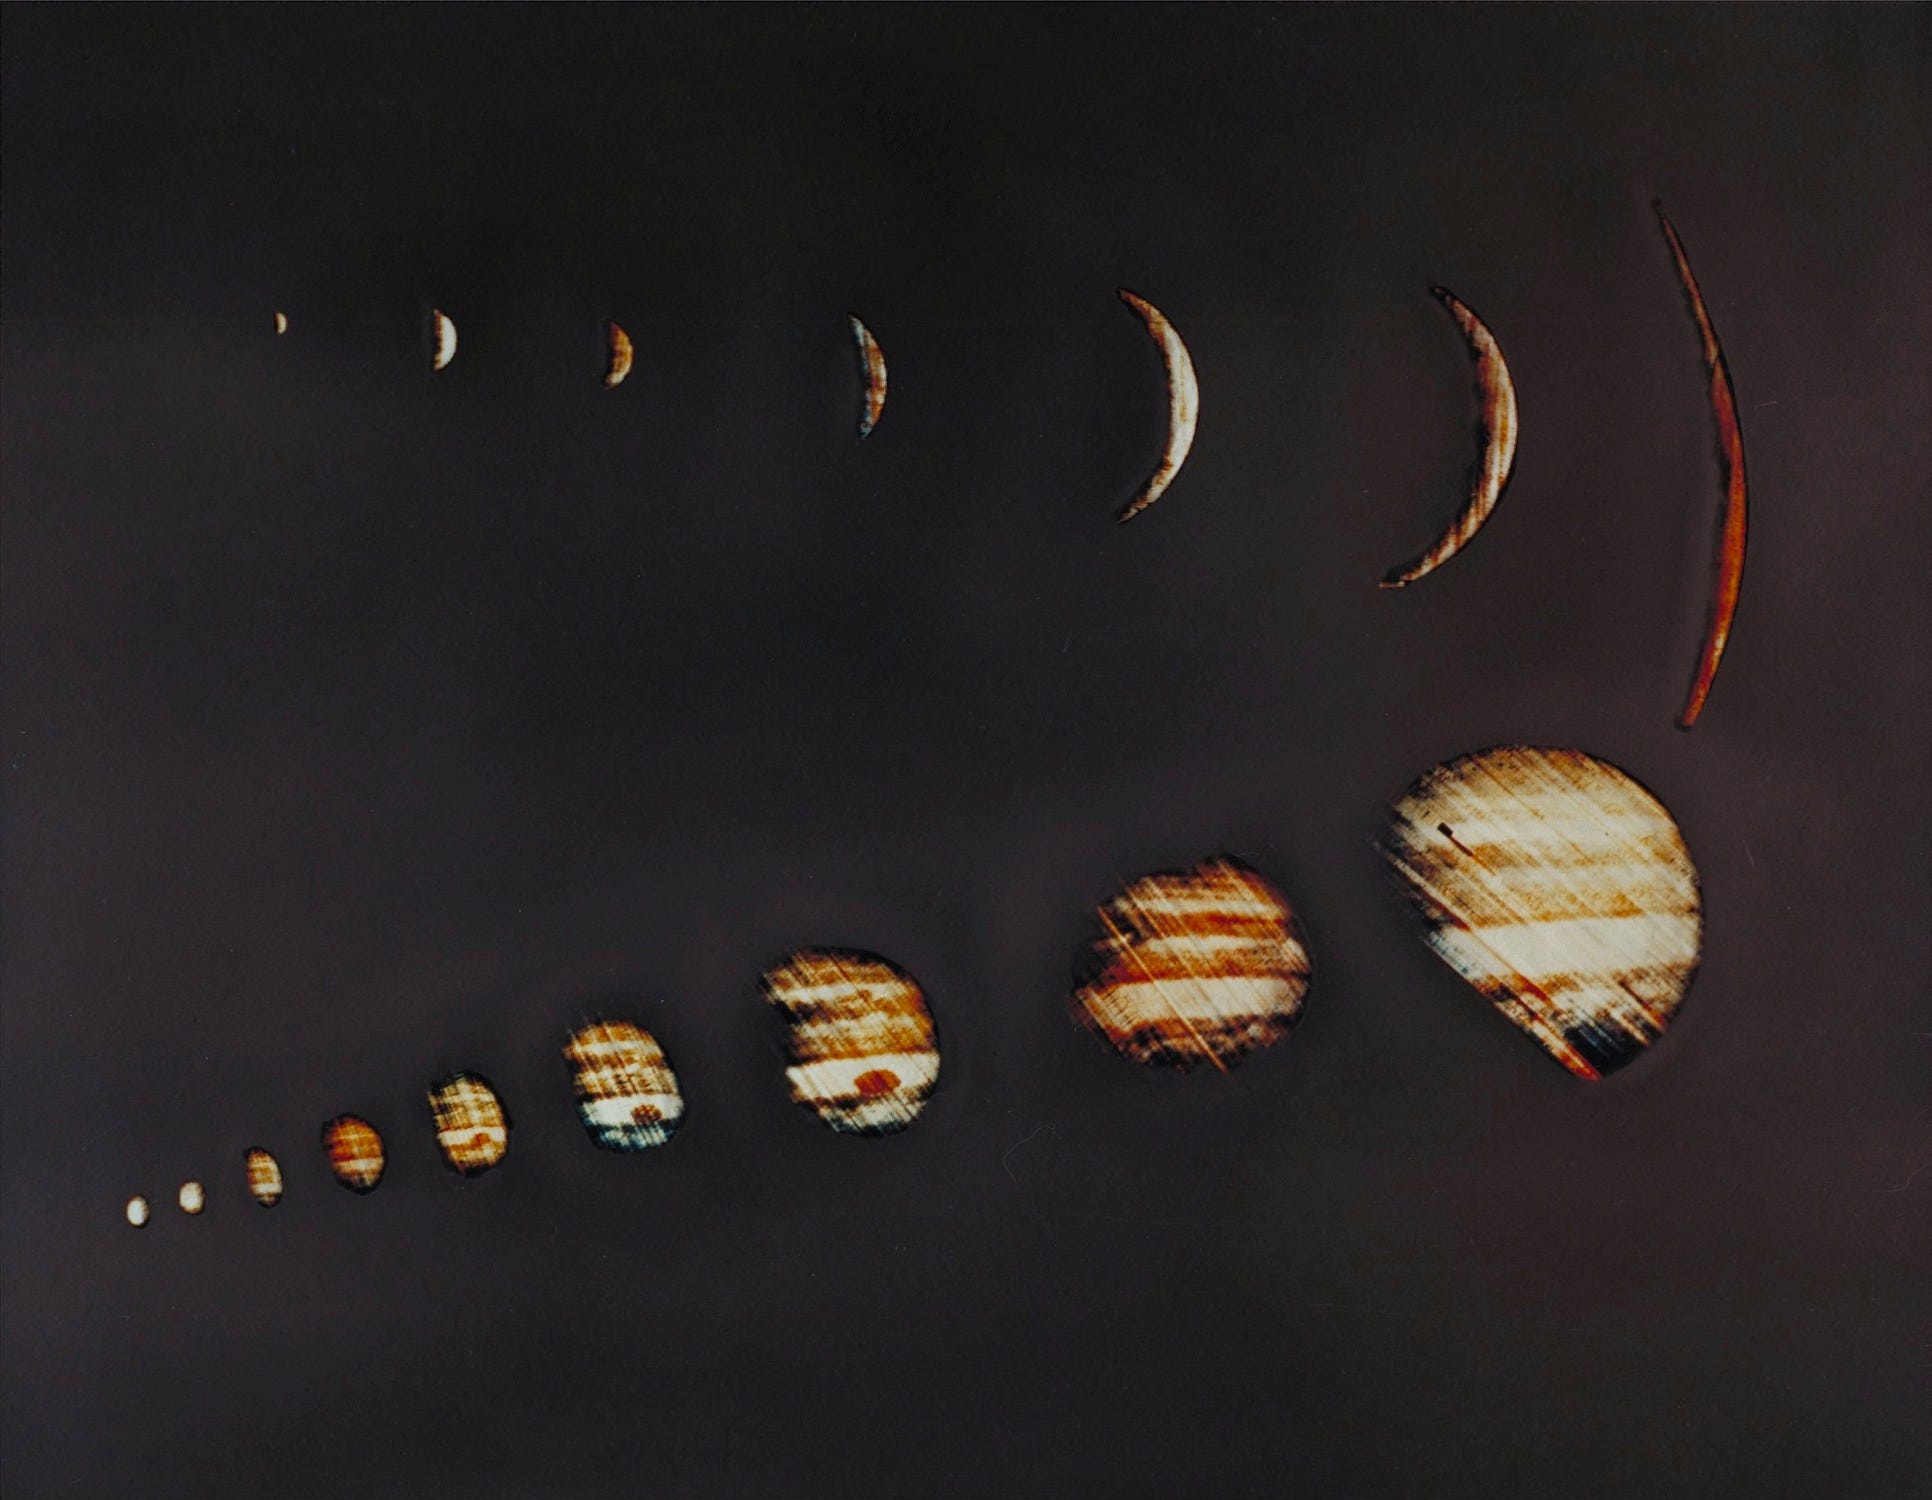 Die Jupiter-Bilderserie mit zunehmender Größe zeigt den Planeten verschwommen mit Filmlinien darüber, die immer näher kommen, in einer dünnen Sichel im oberen Bildverlauf und in einer fast vollständigen hellen Scheibe im unteren Bildverlauf